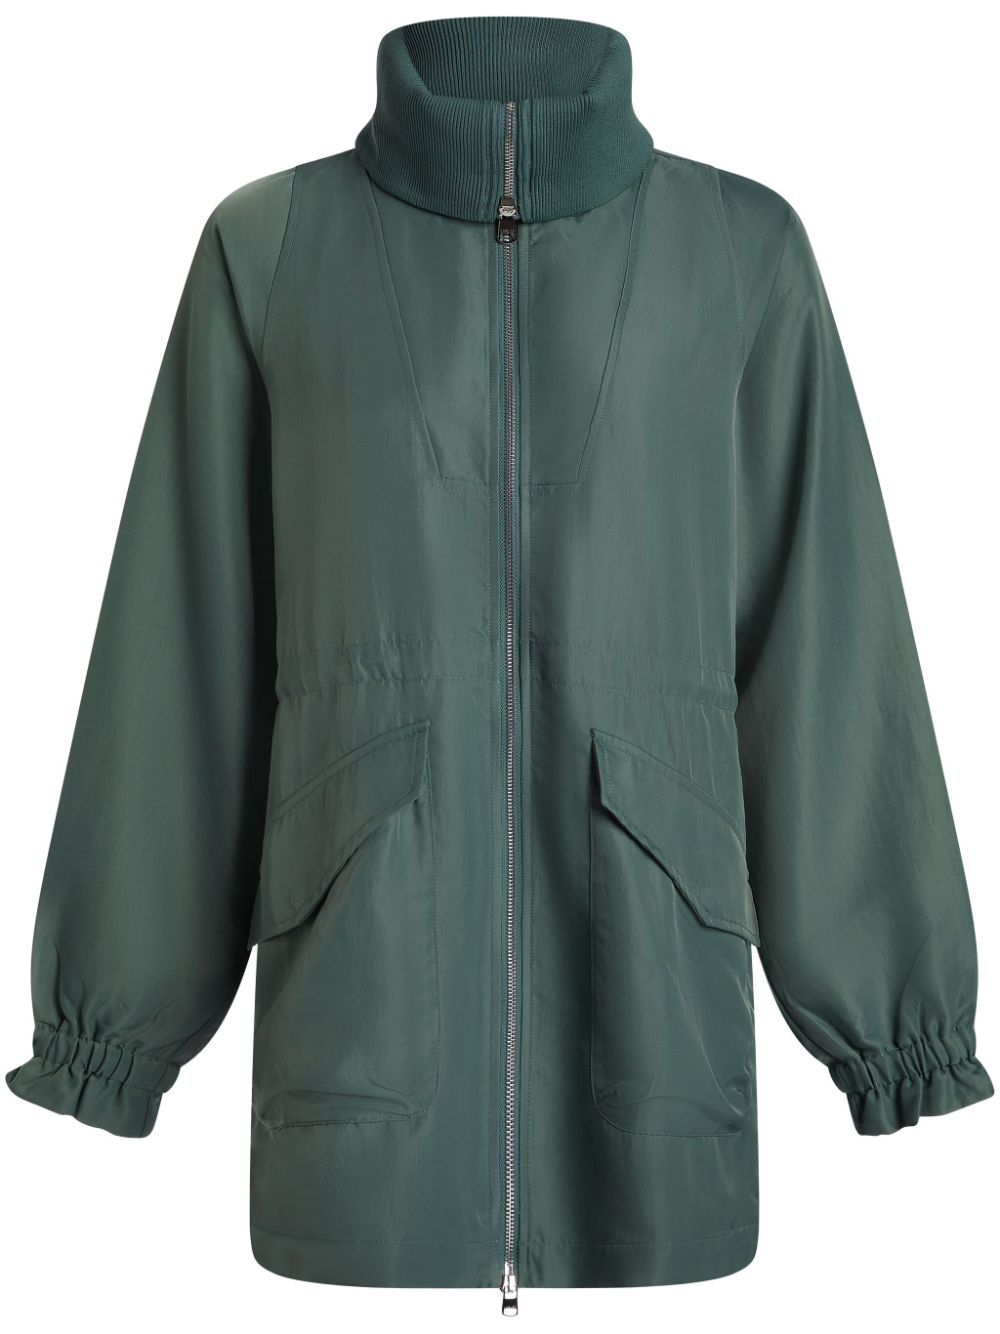 Varley Alison Parka Jacket In Green